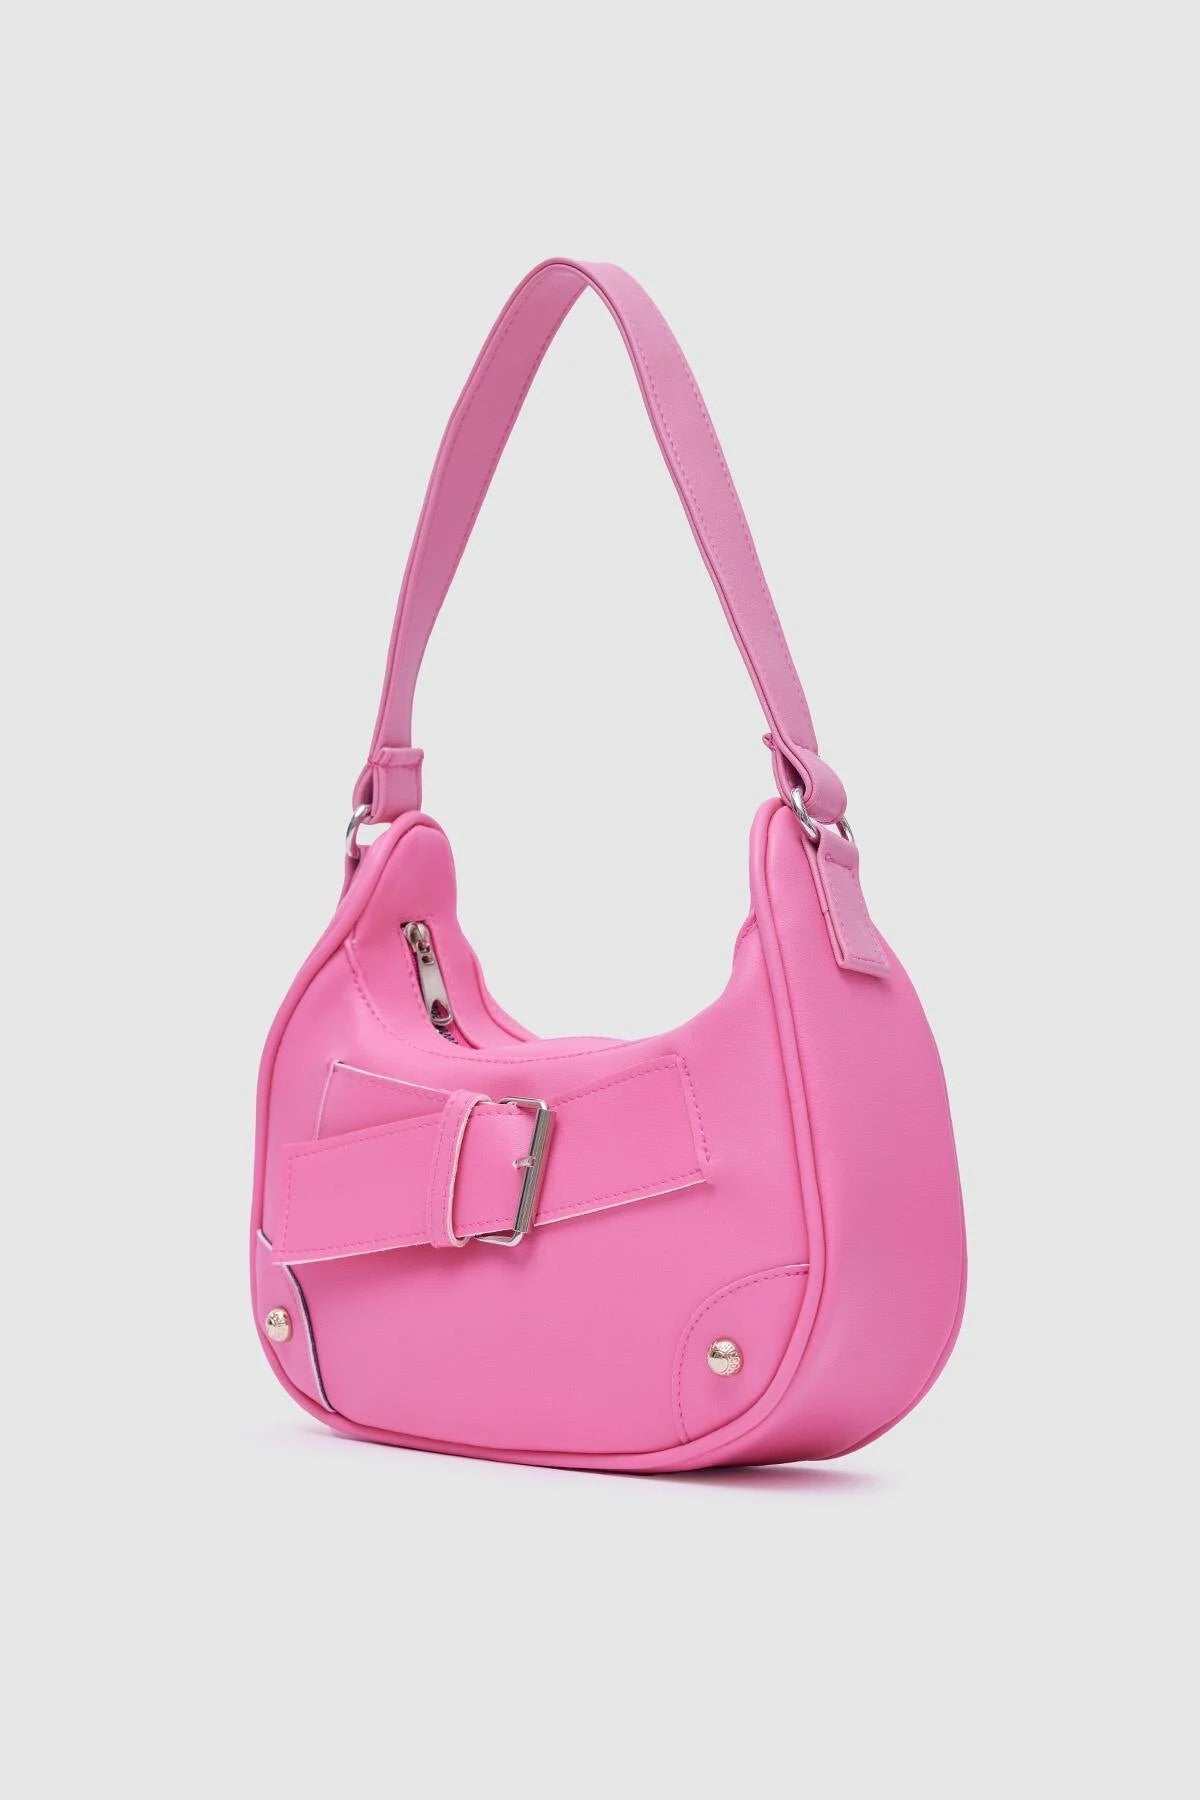 Buckled Faux Leather Pink Baguette Bag bag LUNARITY GARAGE   